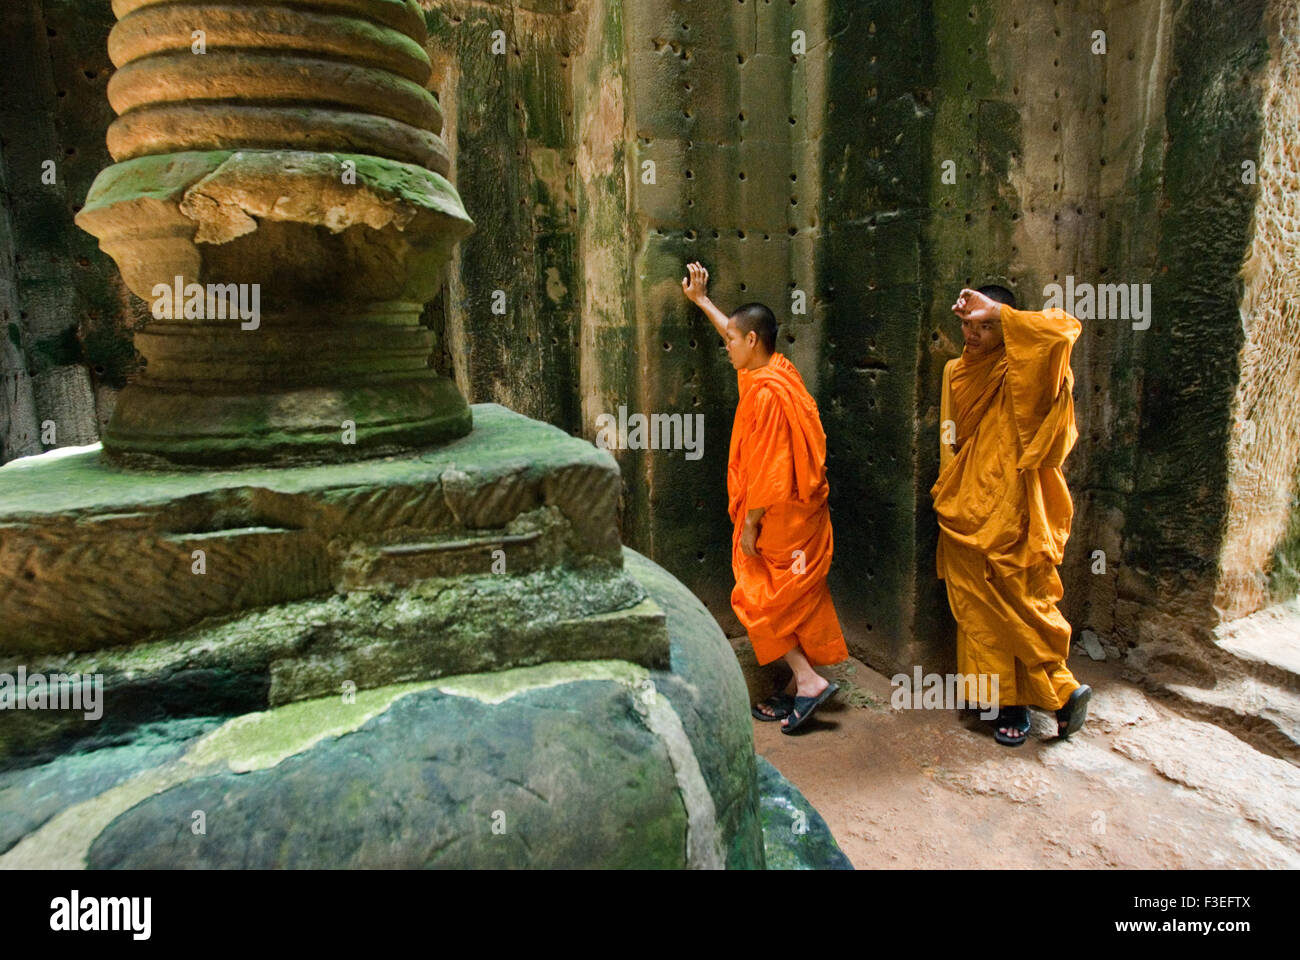 Zwei buddhistische Mönche in den inneren Teil des Tempels Preah Khan.  Wenig bekannt über die Geschichte von Preah Khan. Zu unterscheiden Stockfoto